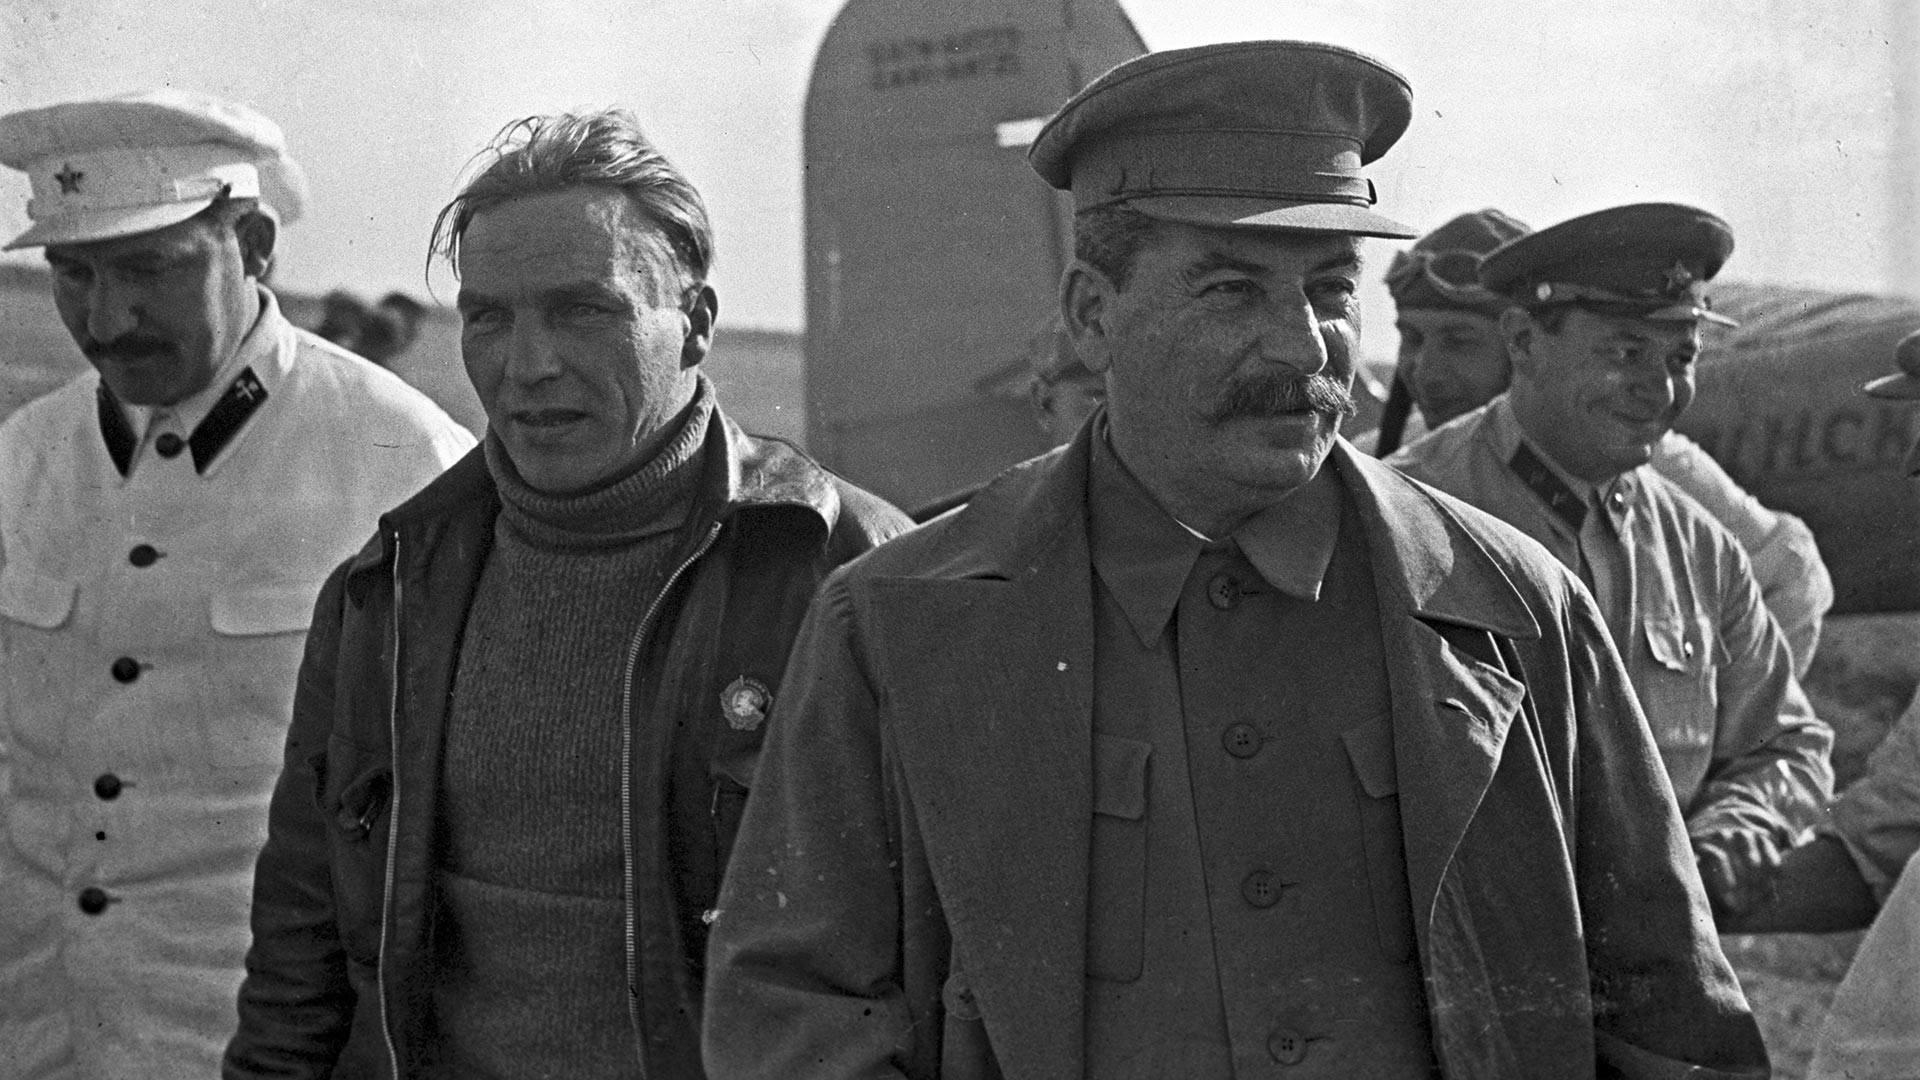 Generalni sekretar CK RSFSR Josif Stalin s članom Politbiroja Lazarjem Kaganovičem med sprejemom sovjetskega poskusnega pilota Valerija Čkalova (v sredini) na Ščolkovskem letališču, 10. avgusta 1936
